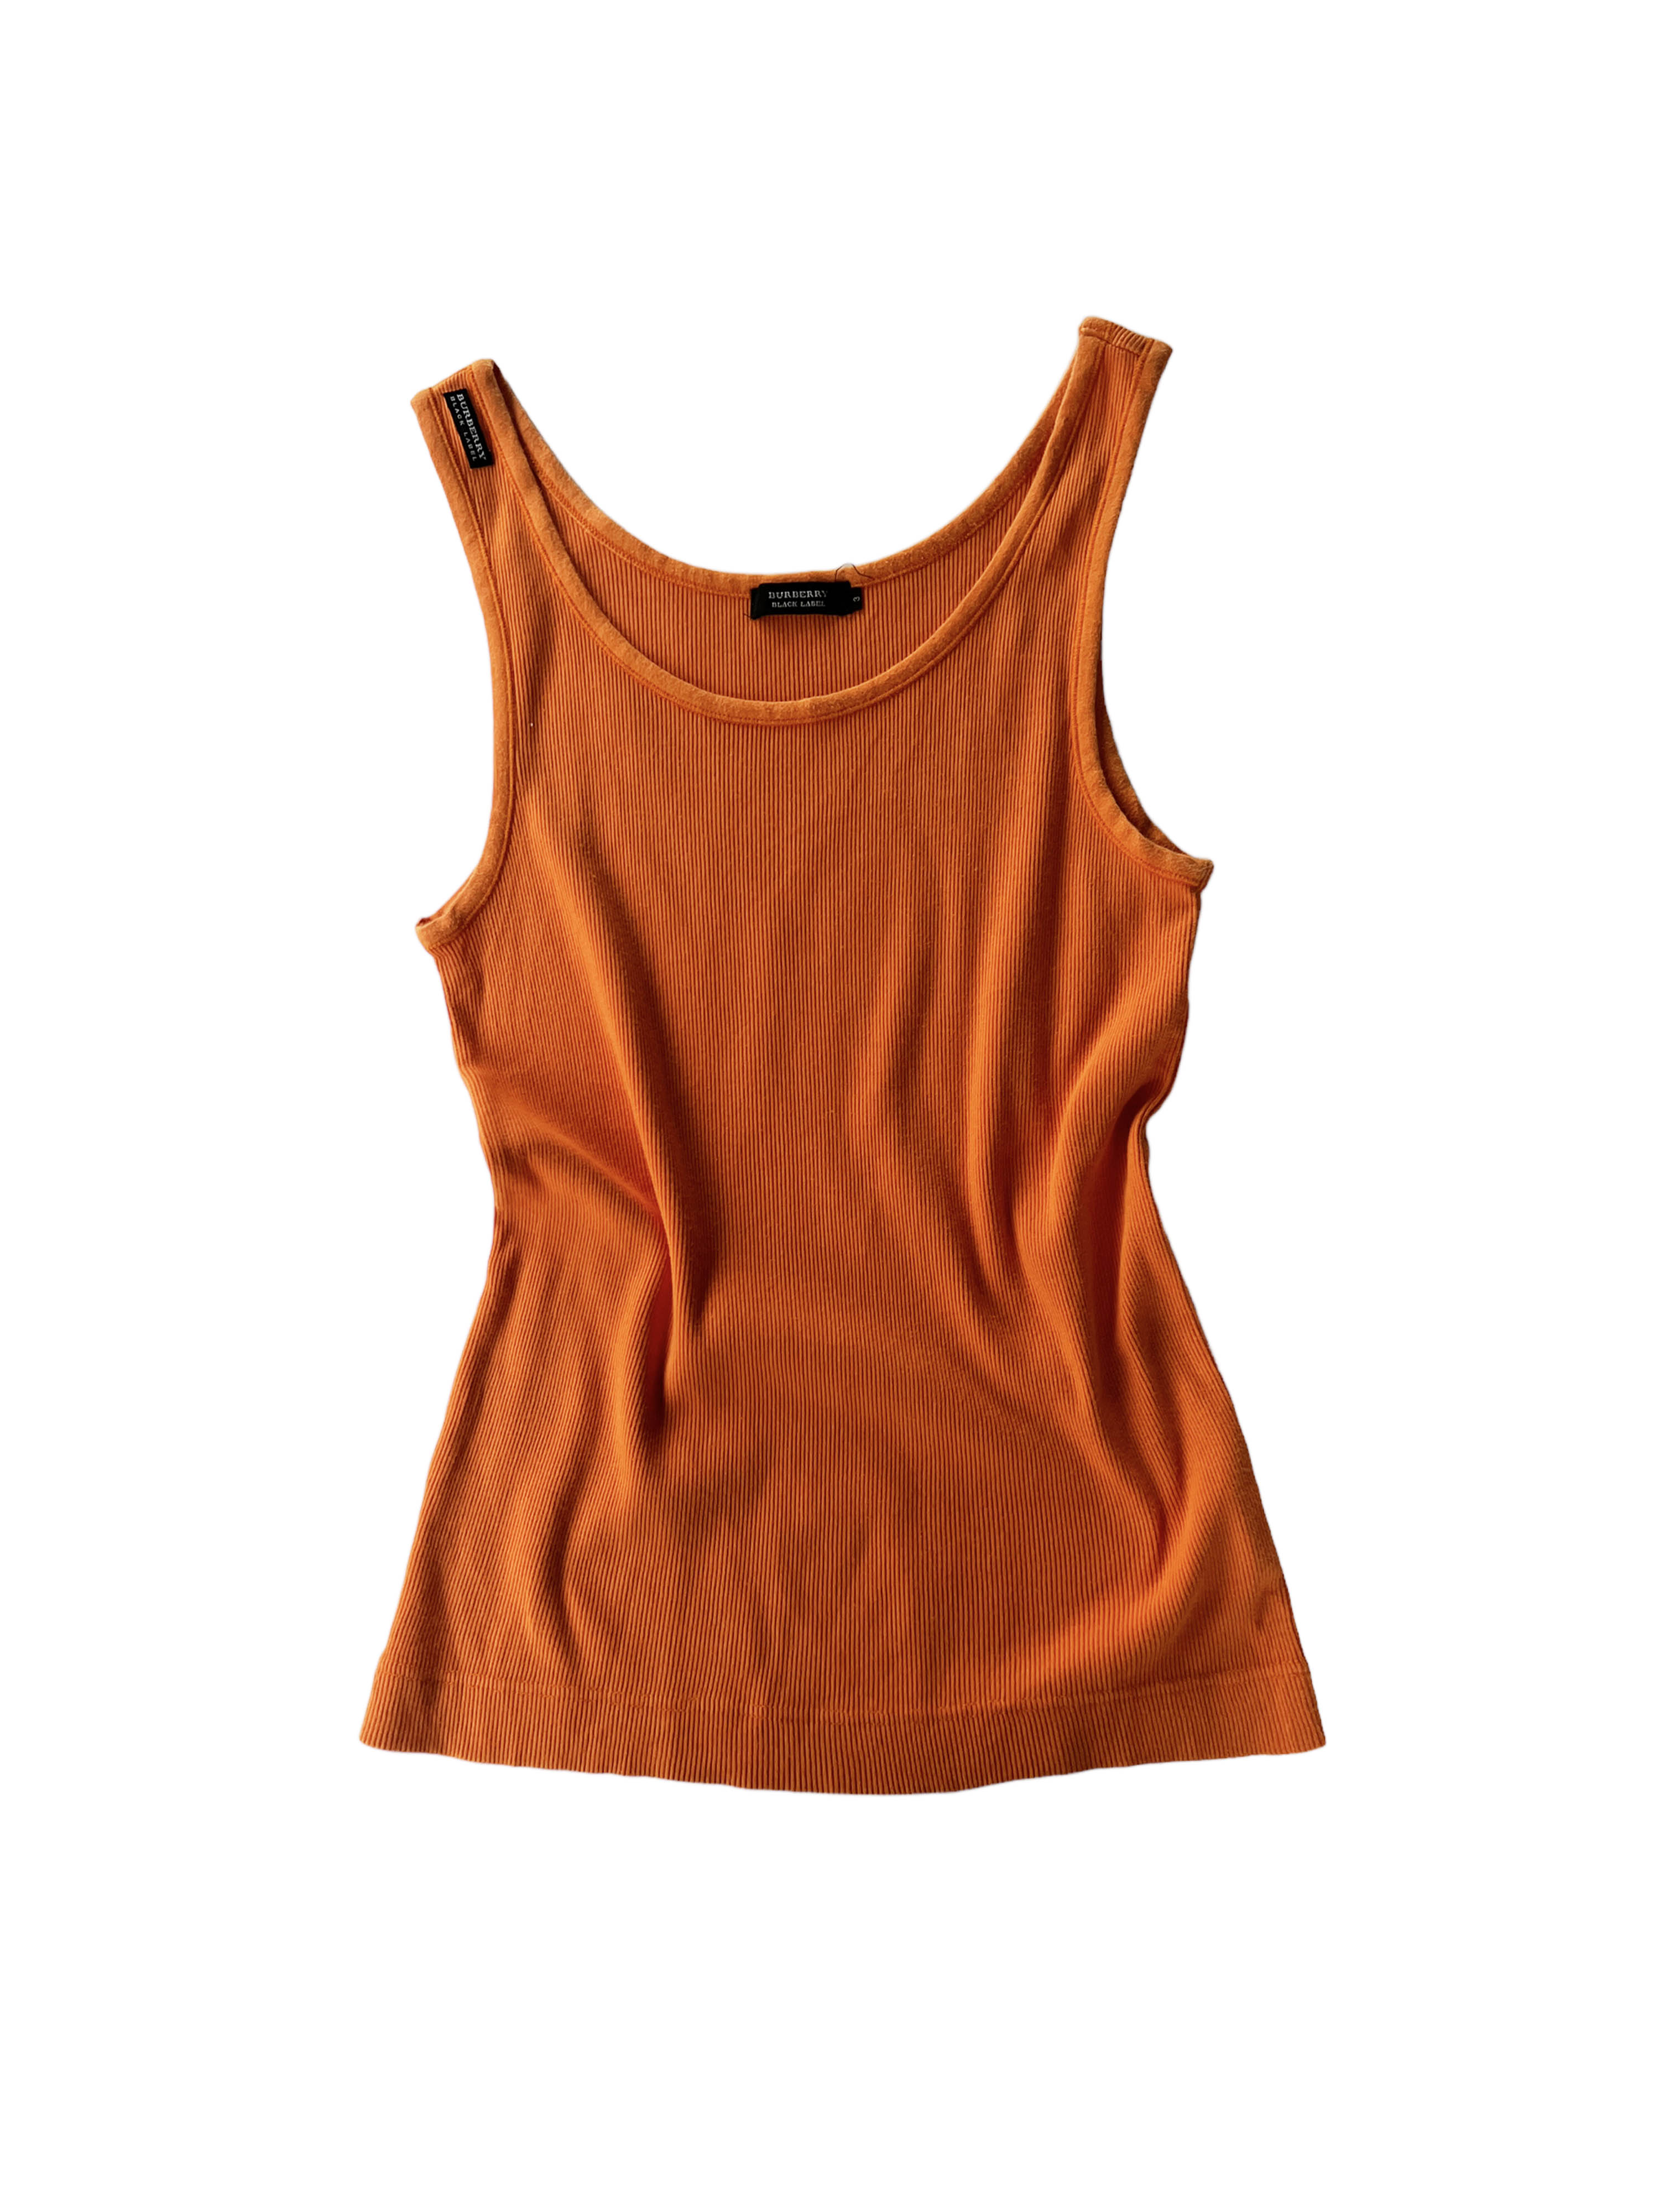 BURBERRY orange sleeveless